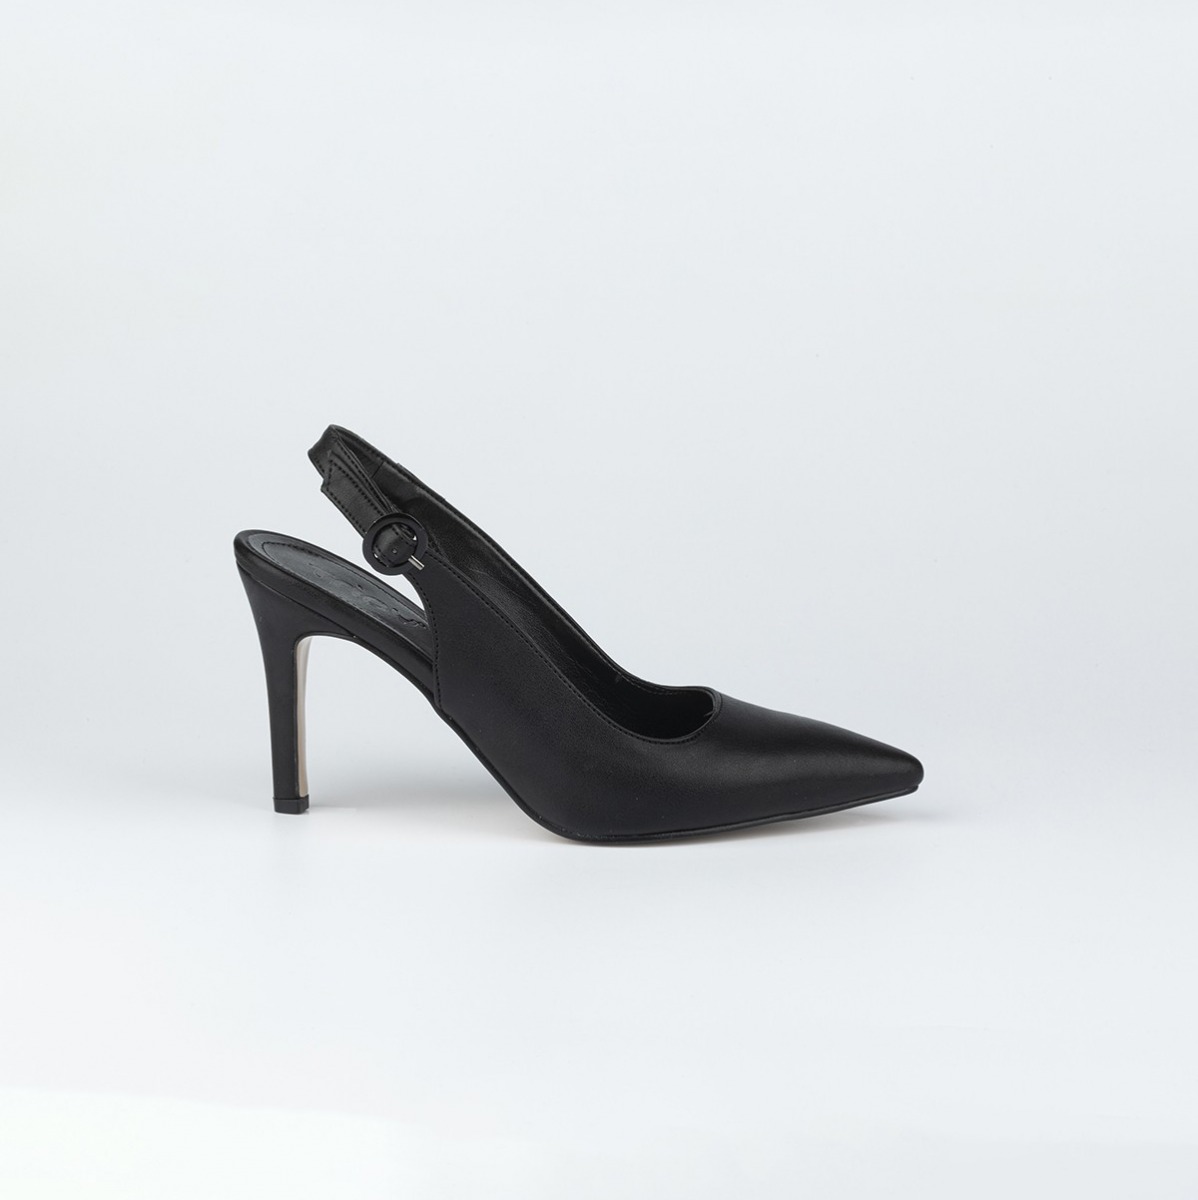 Flo Kadın Klasik Topuklu Ayakkabı. 4